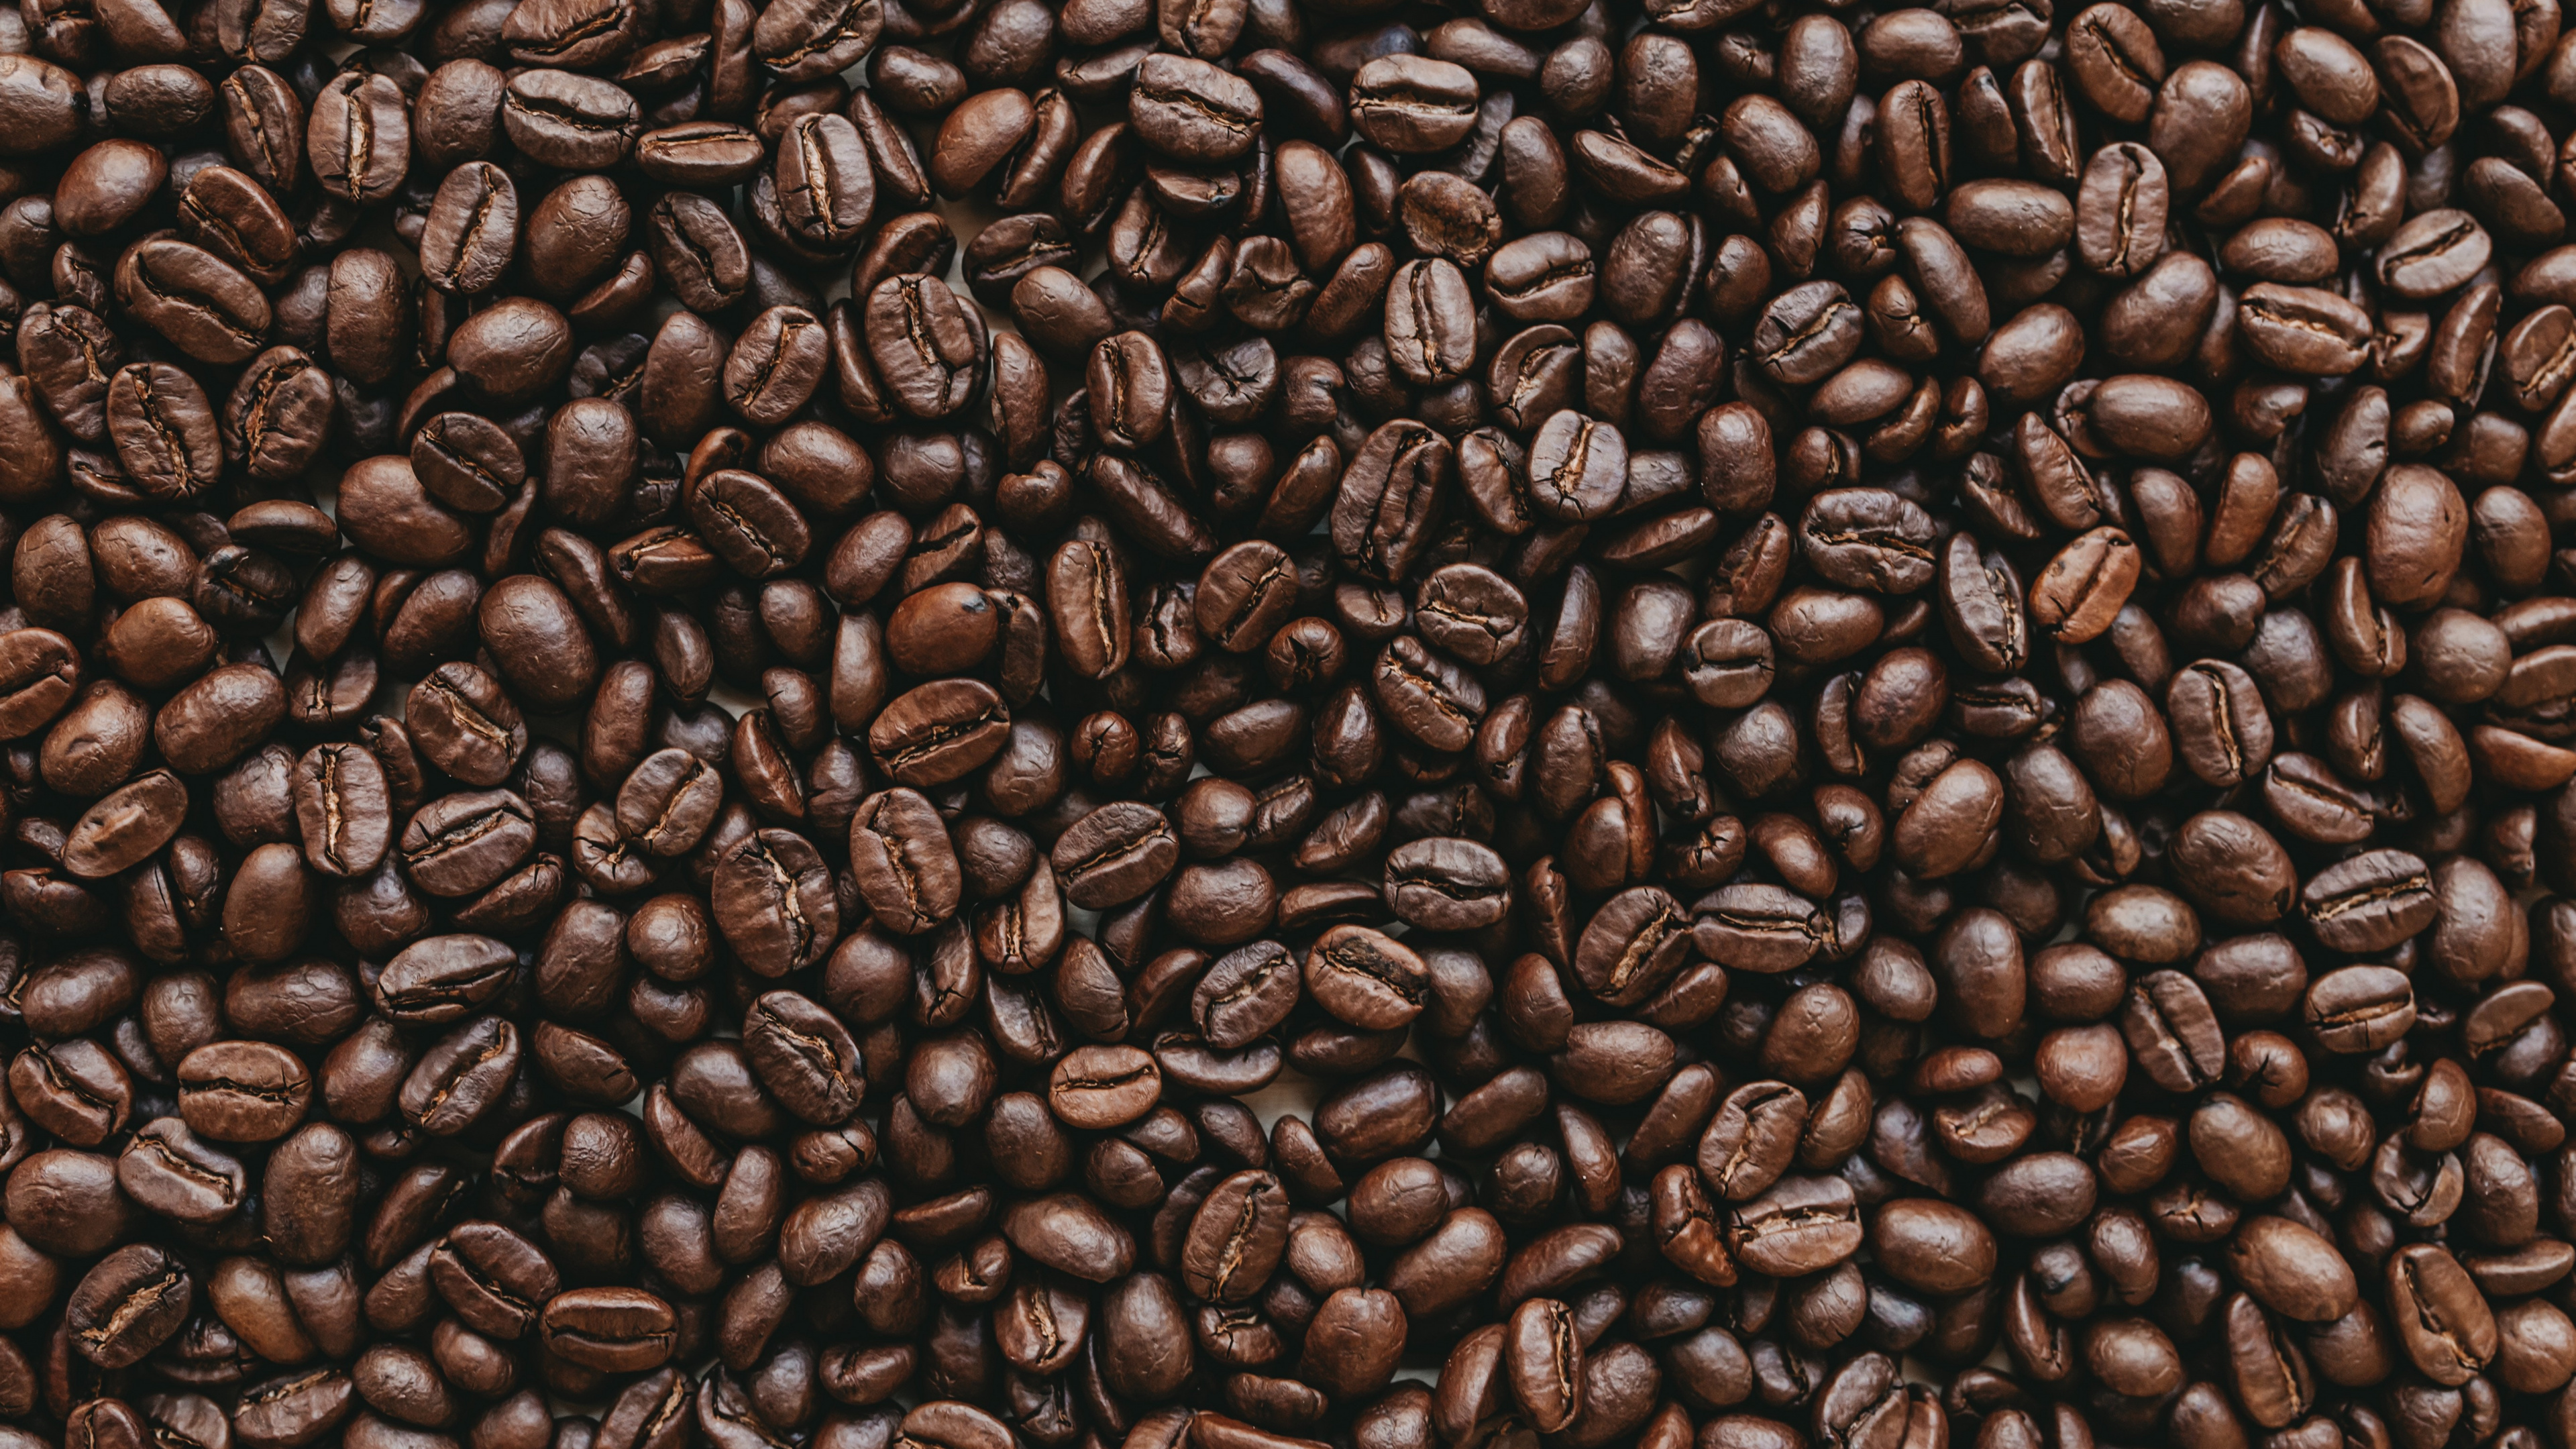 咖啡因, 棕色, 单一来源咖啡, 牙买加蓝山咖啡, Java咖啡 壁纸 3840x2160 允许